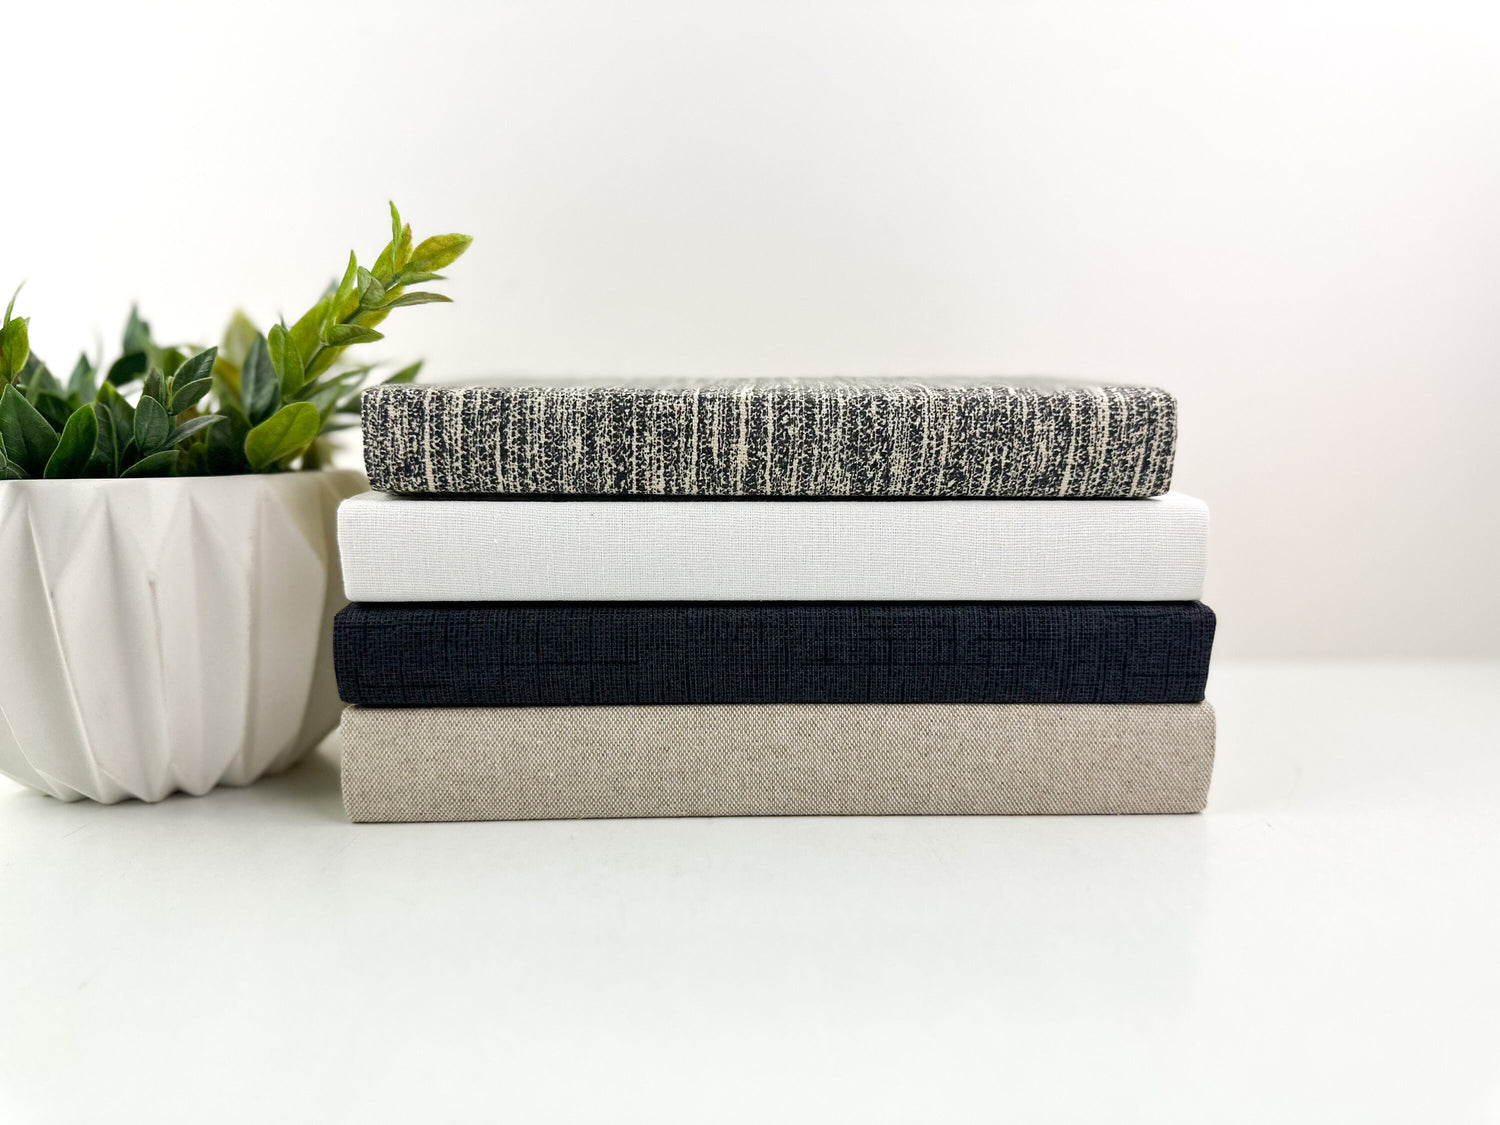 Fabric Decorative Books for Living Room Decor, Book Set for Shelf Decor, Book Bundle, Table Decor